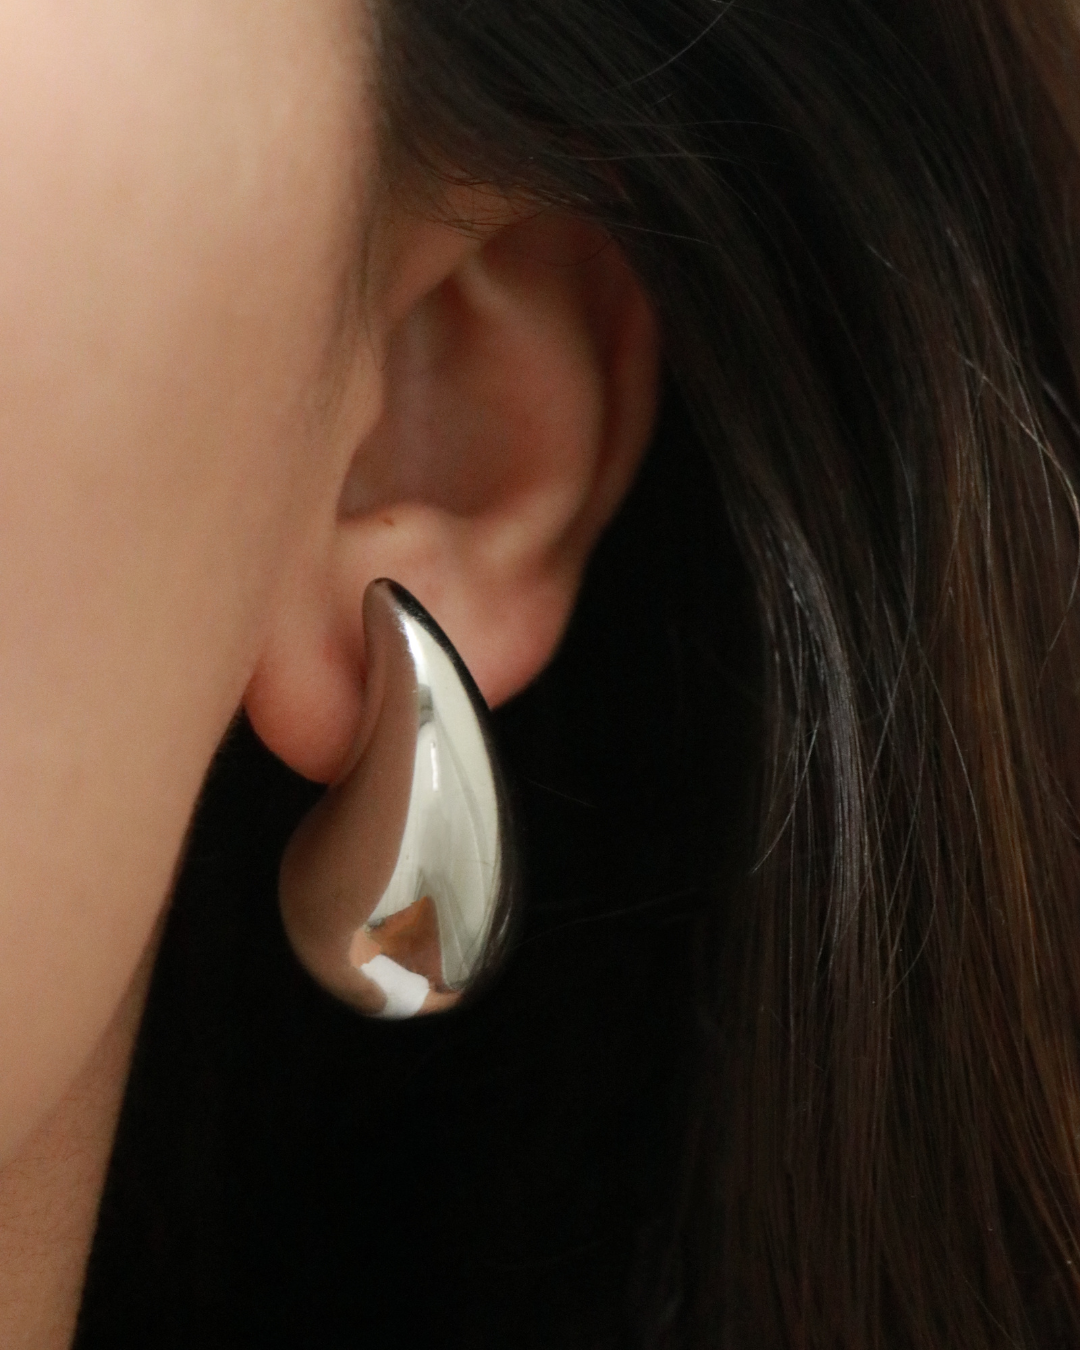 The Jenny Teardrop Earrings